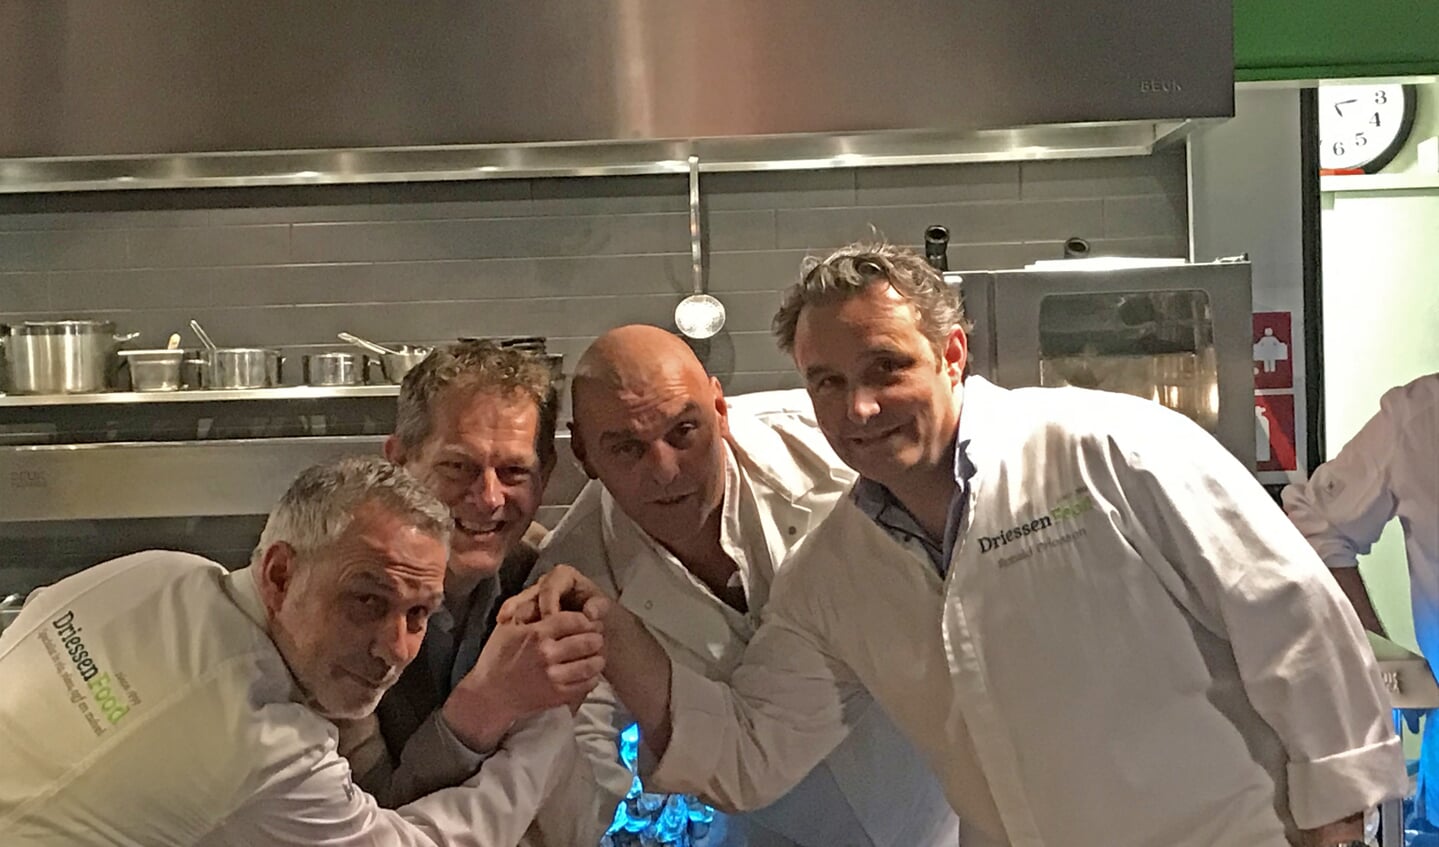 Christiaan Driessen (Directeur), Gerhard Frijling (Directeur), Gertjan Kiers (Vleesspecialist) en Ronald Driessen (Directeur) geven elkaar een alternatieve handdruk.